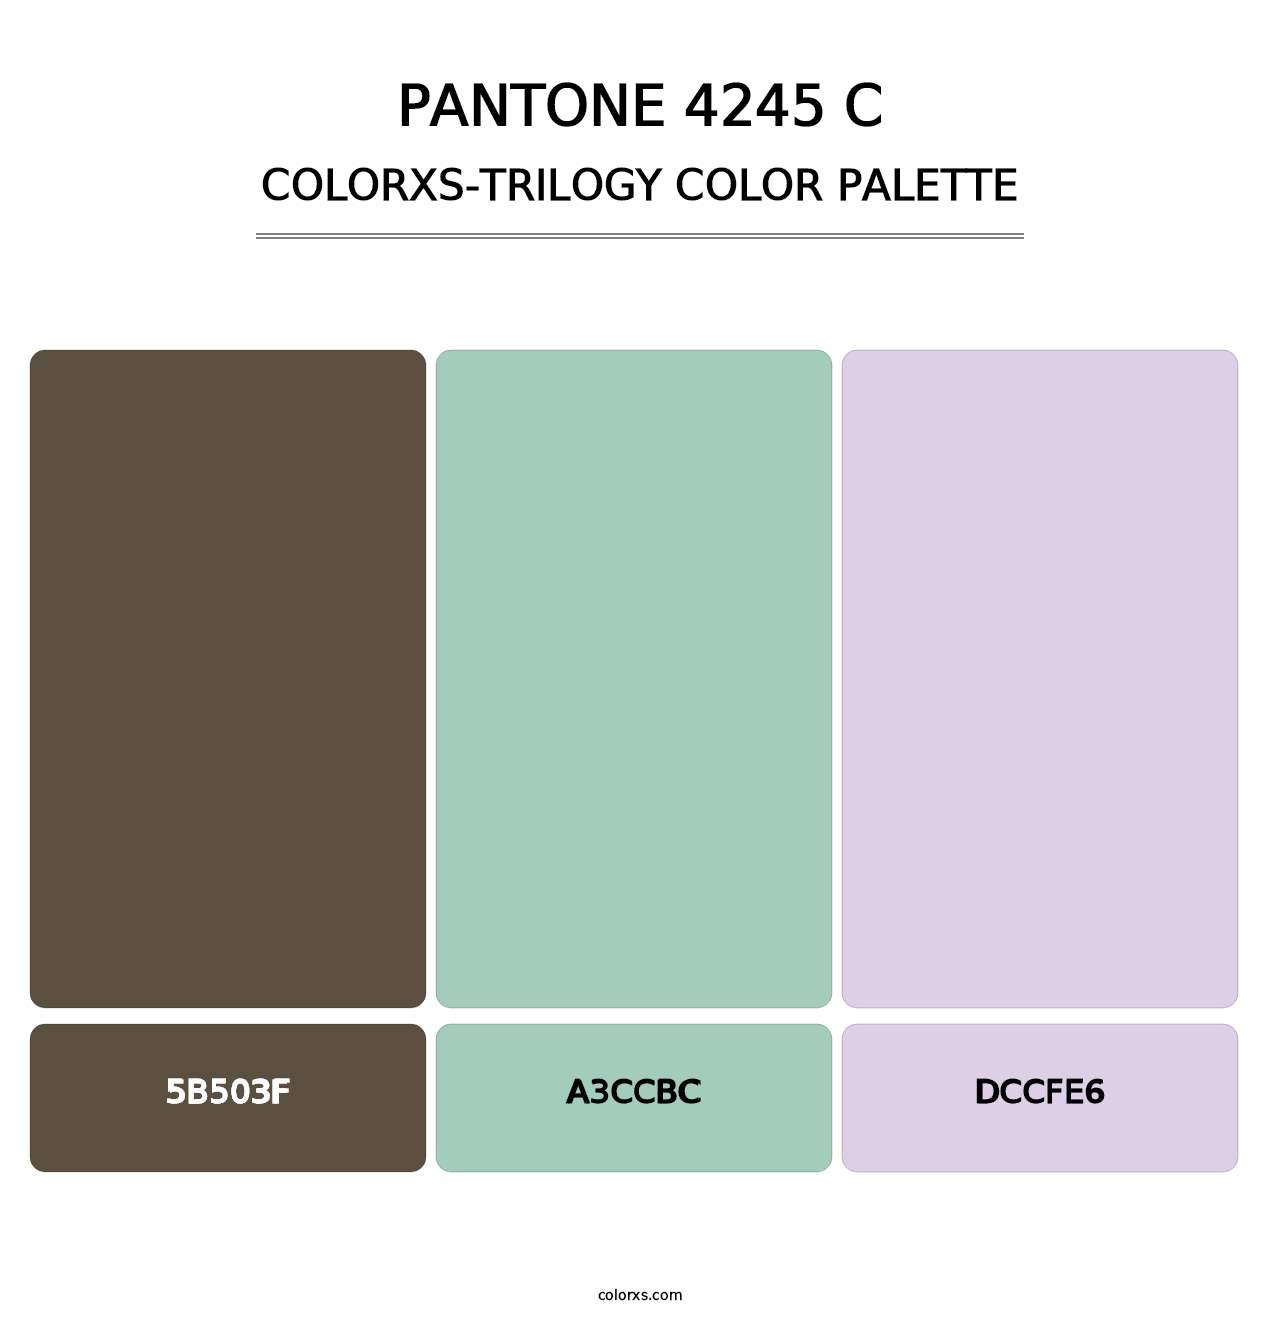 PANTONE 4245 C - Colorxs Trilogy Palette